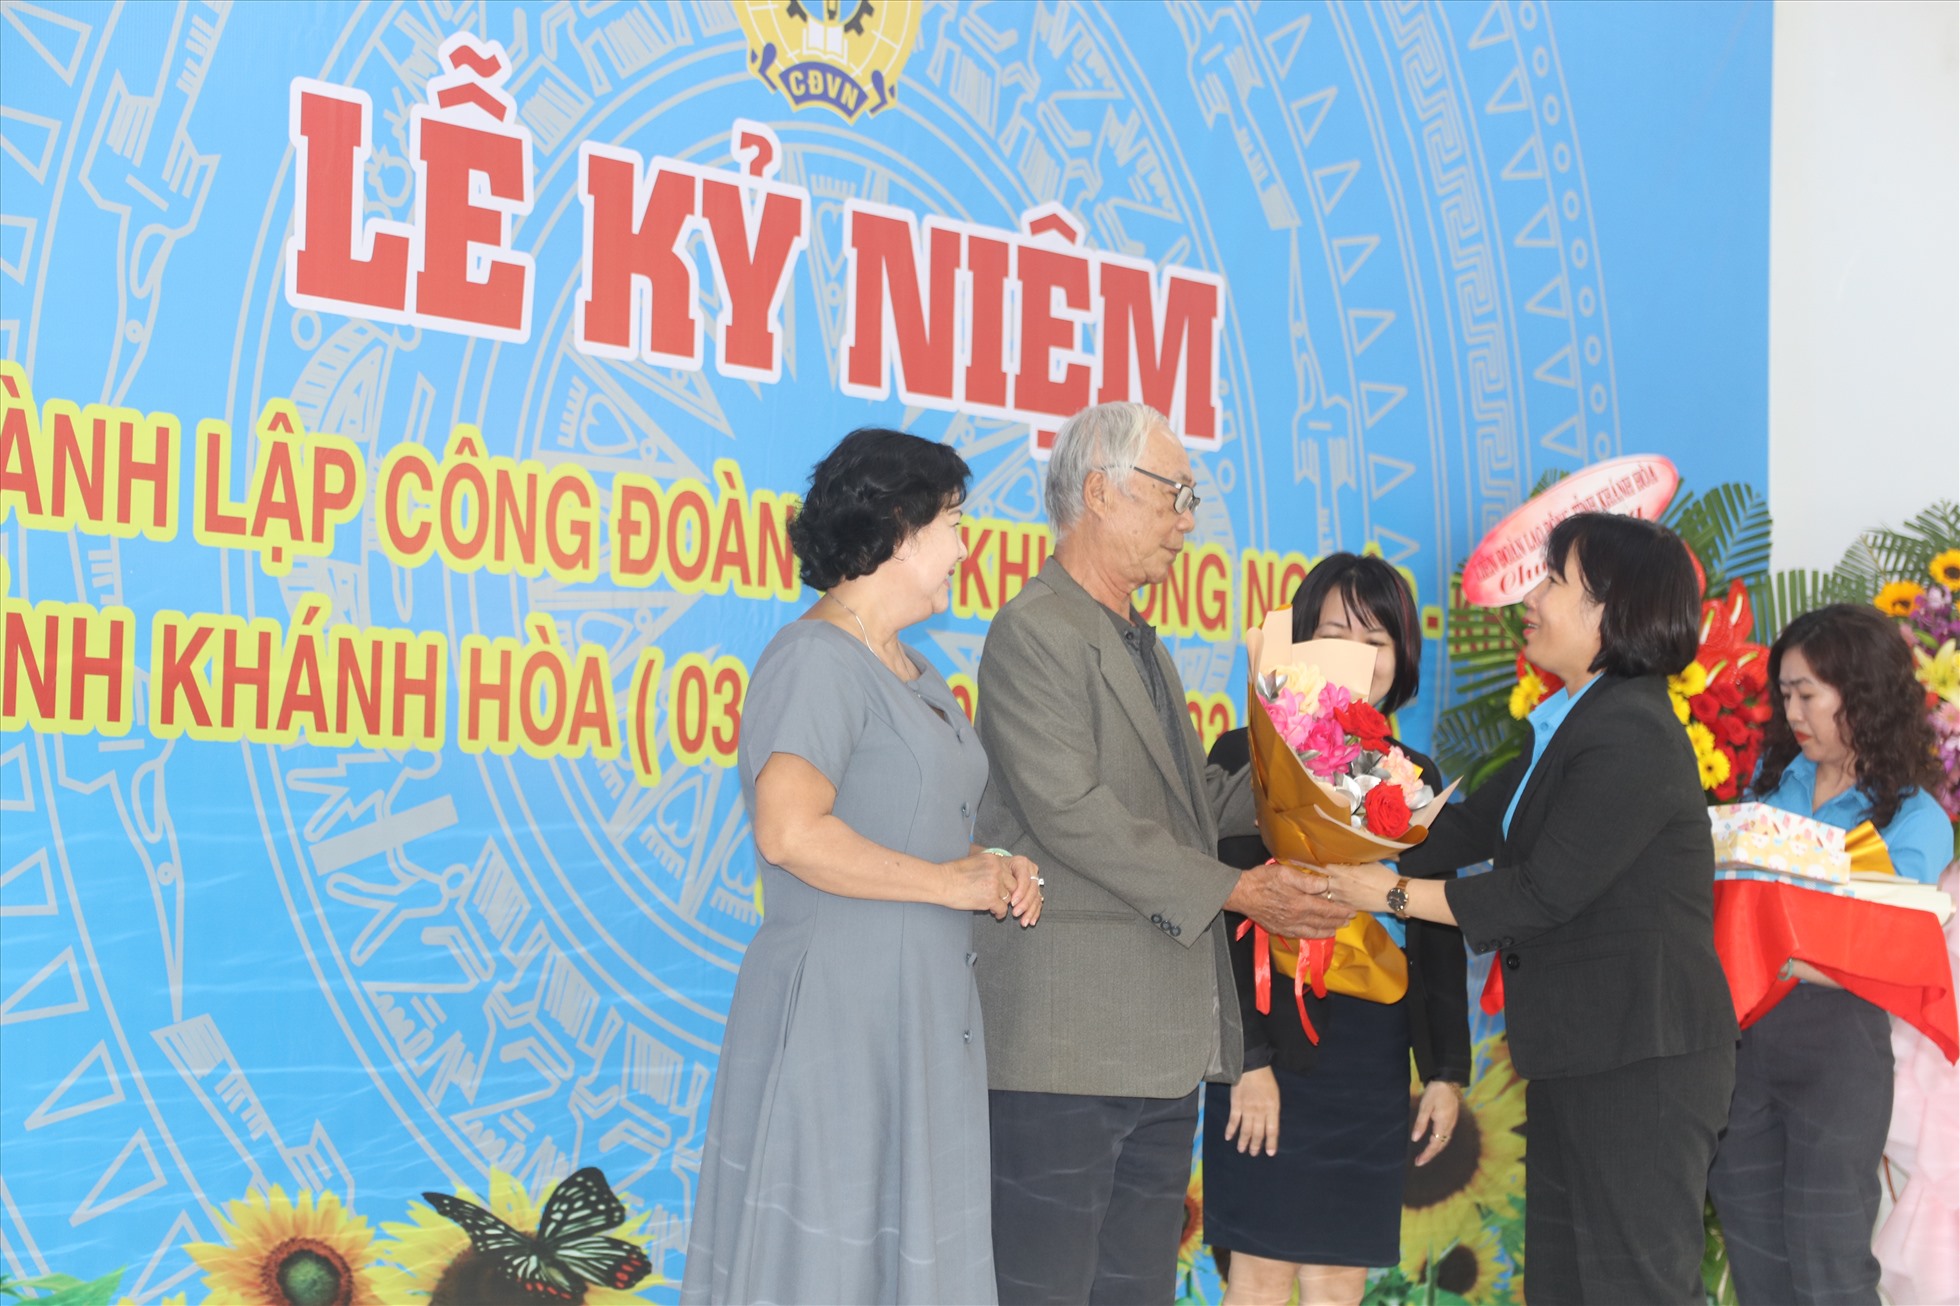 Bà Trương Thị Thu- Chủ tịch Công đoàn các KKT-KCN Khánh Hòa tặng hoa tri ân các lãnh đạo xây dựng công đoàn KKT-KCN qua các thời kỳ. Ảnh: Phương Linh